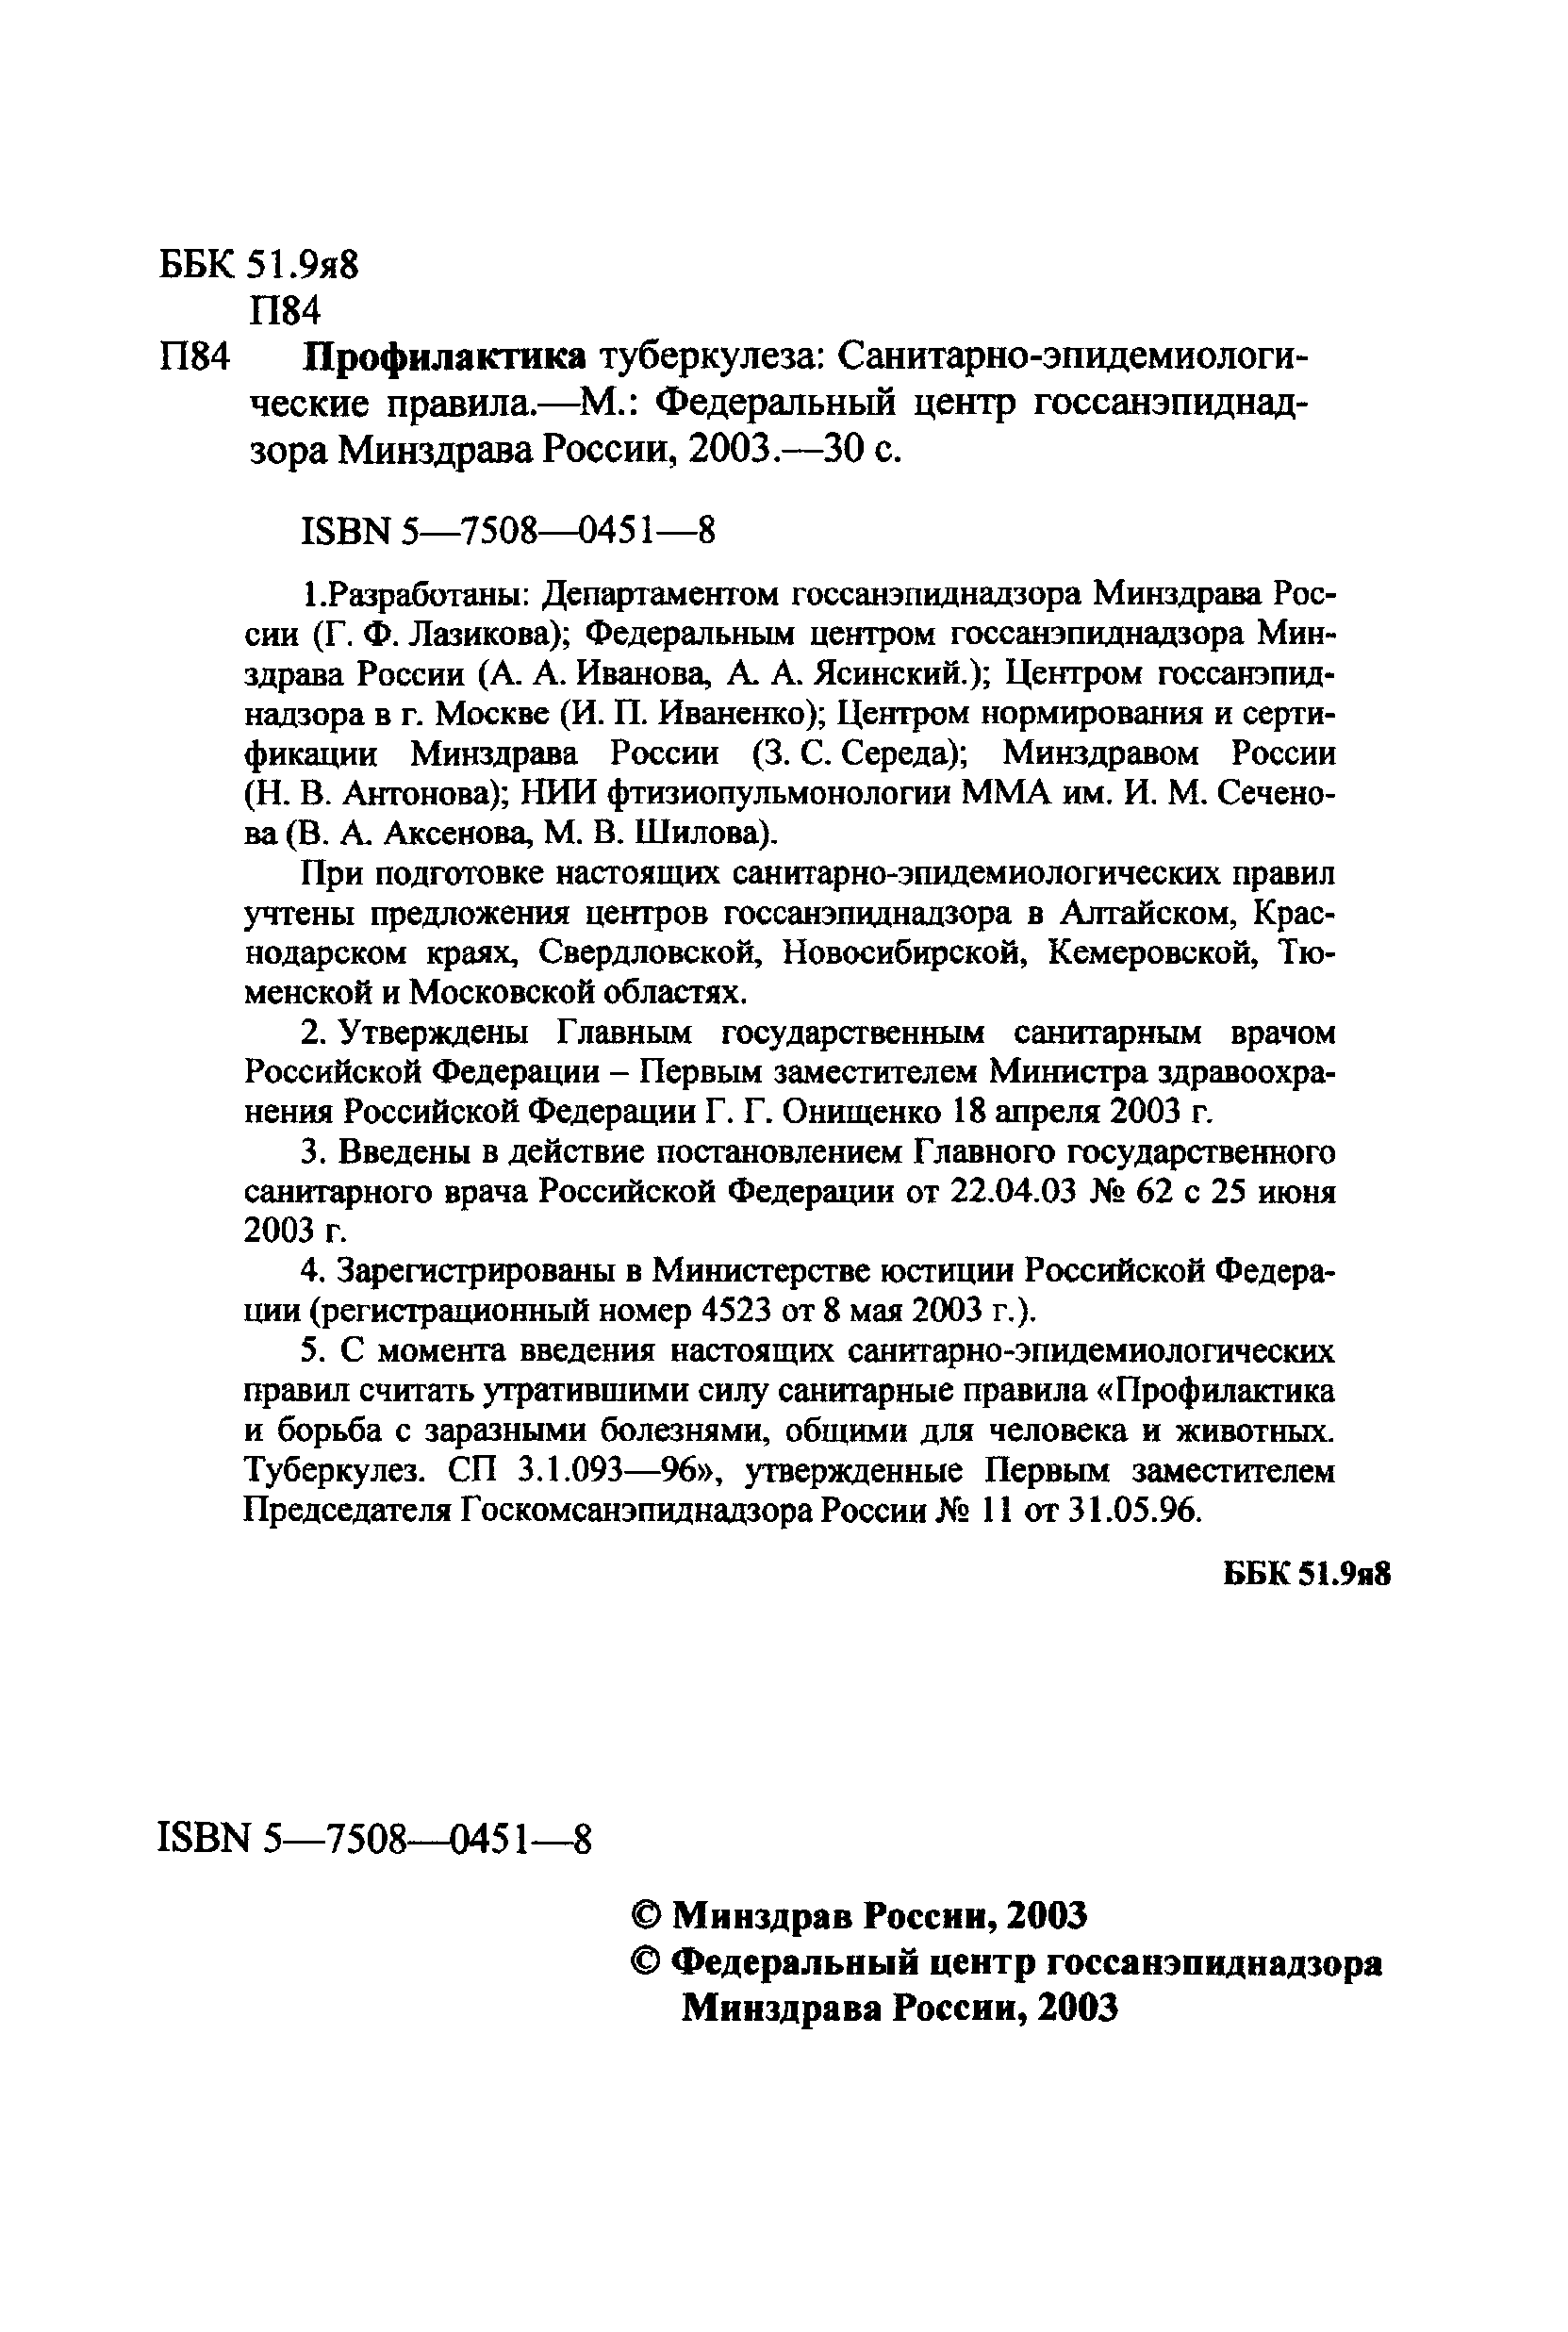 СП 3.1.1295-03